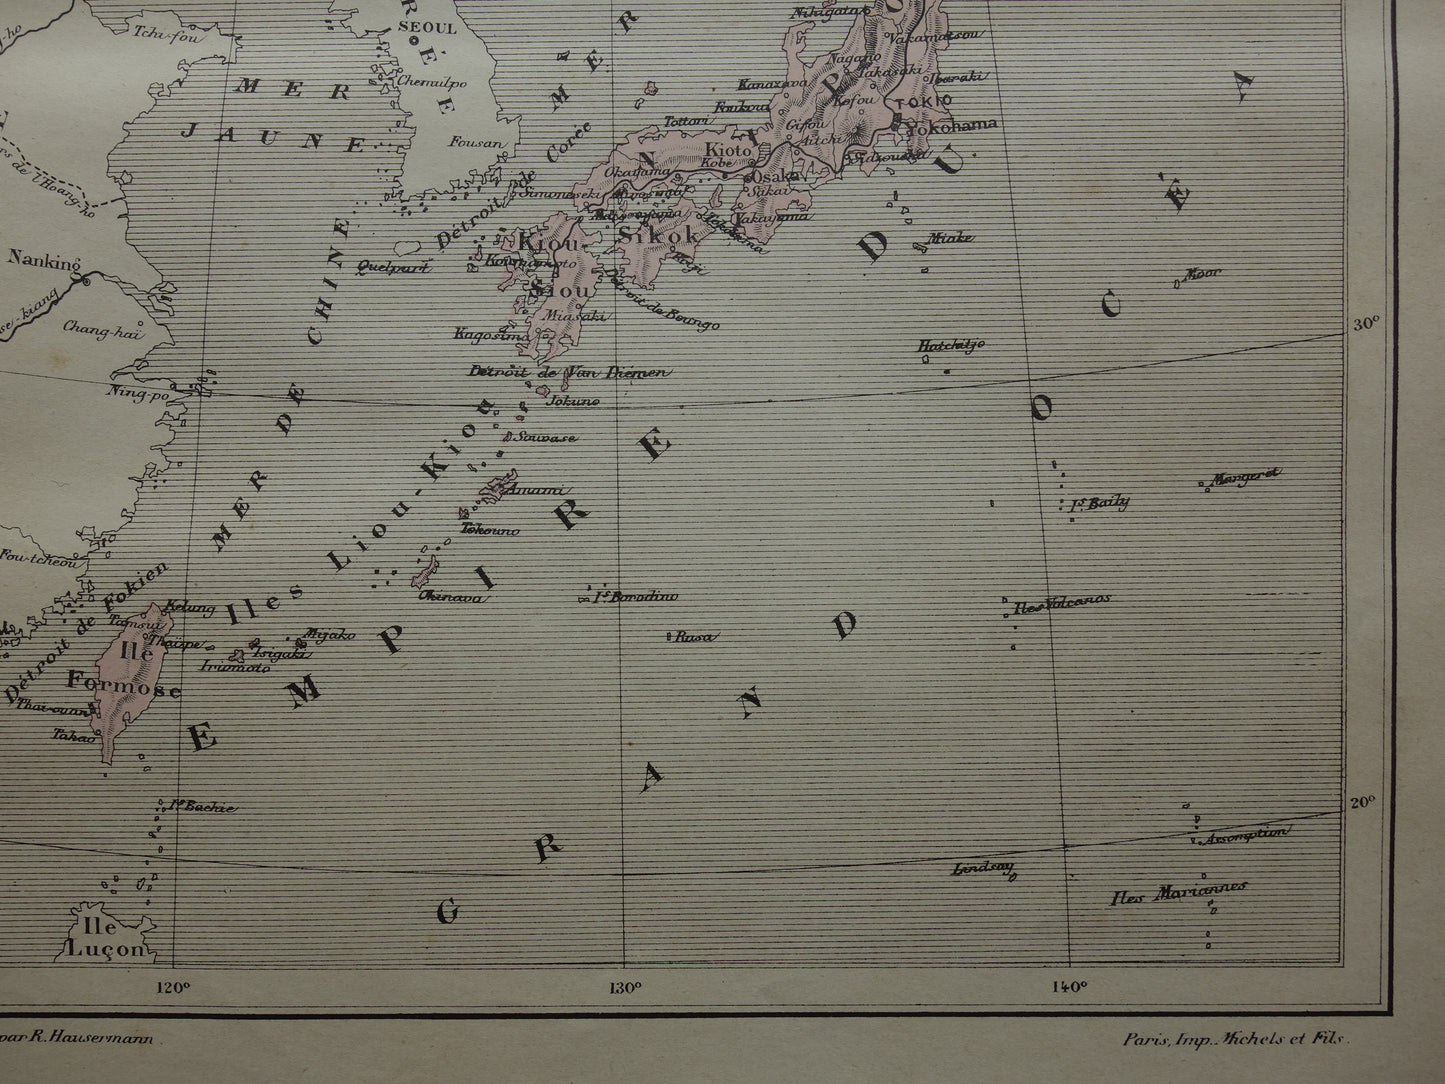 JAPAN Oude kaart van het Japanse Rijk uit het jaar 1896 historische landkaart Japan oude vintage kaarten